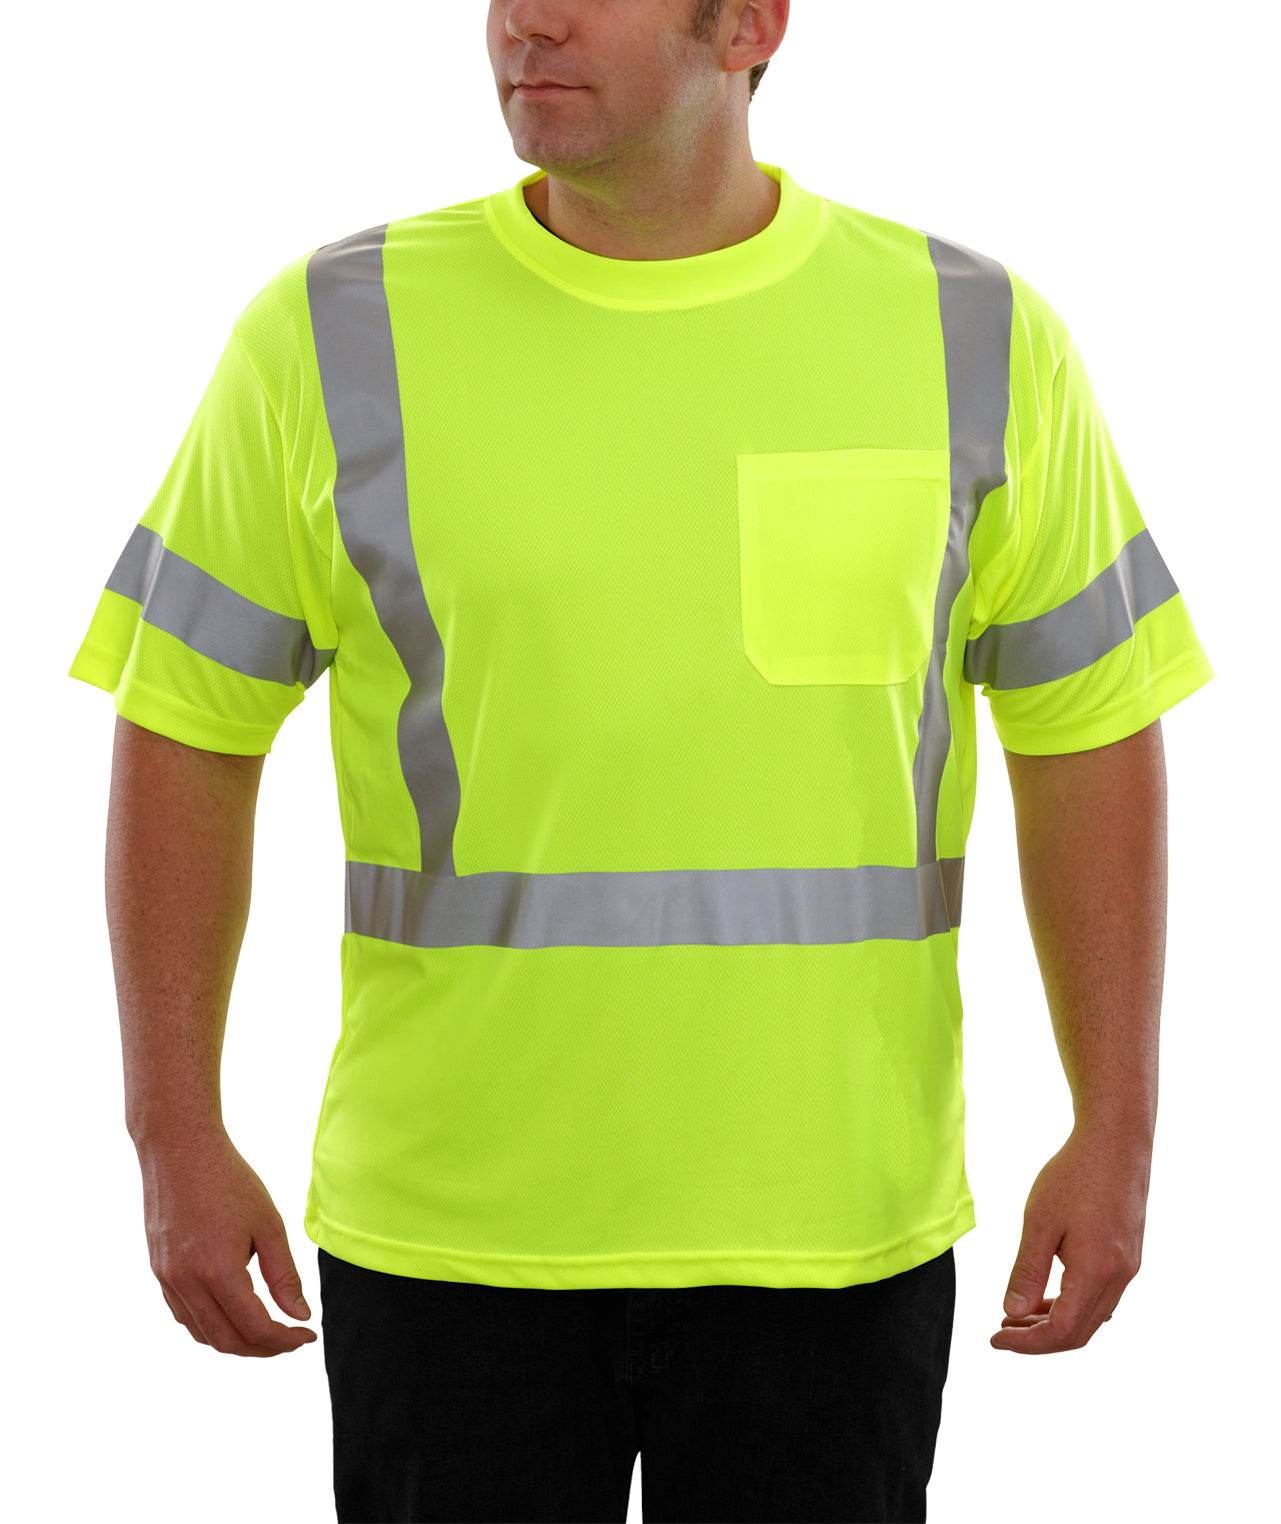 104STLM Hi-Vis Lime Birdseye Pocket Safety T-Shirt